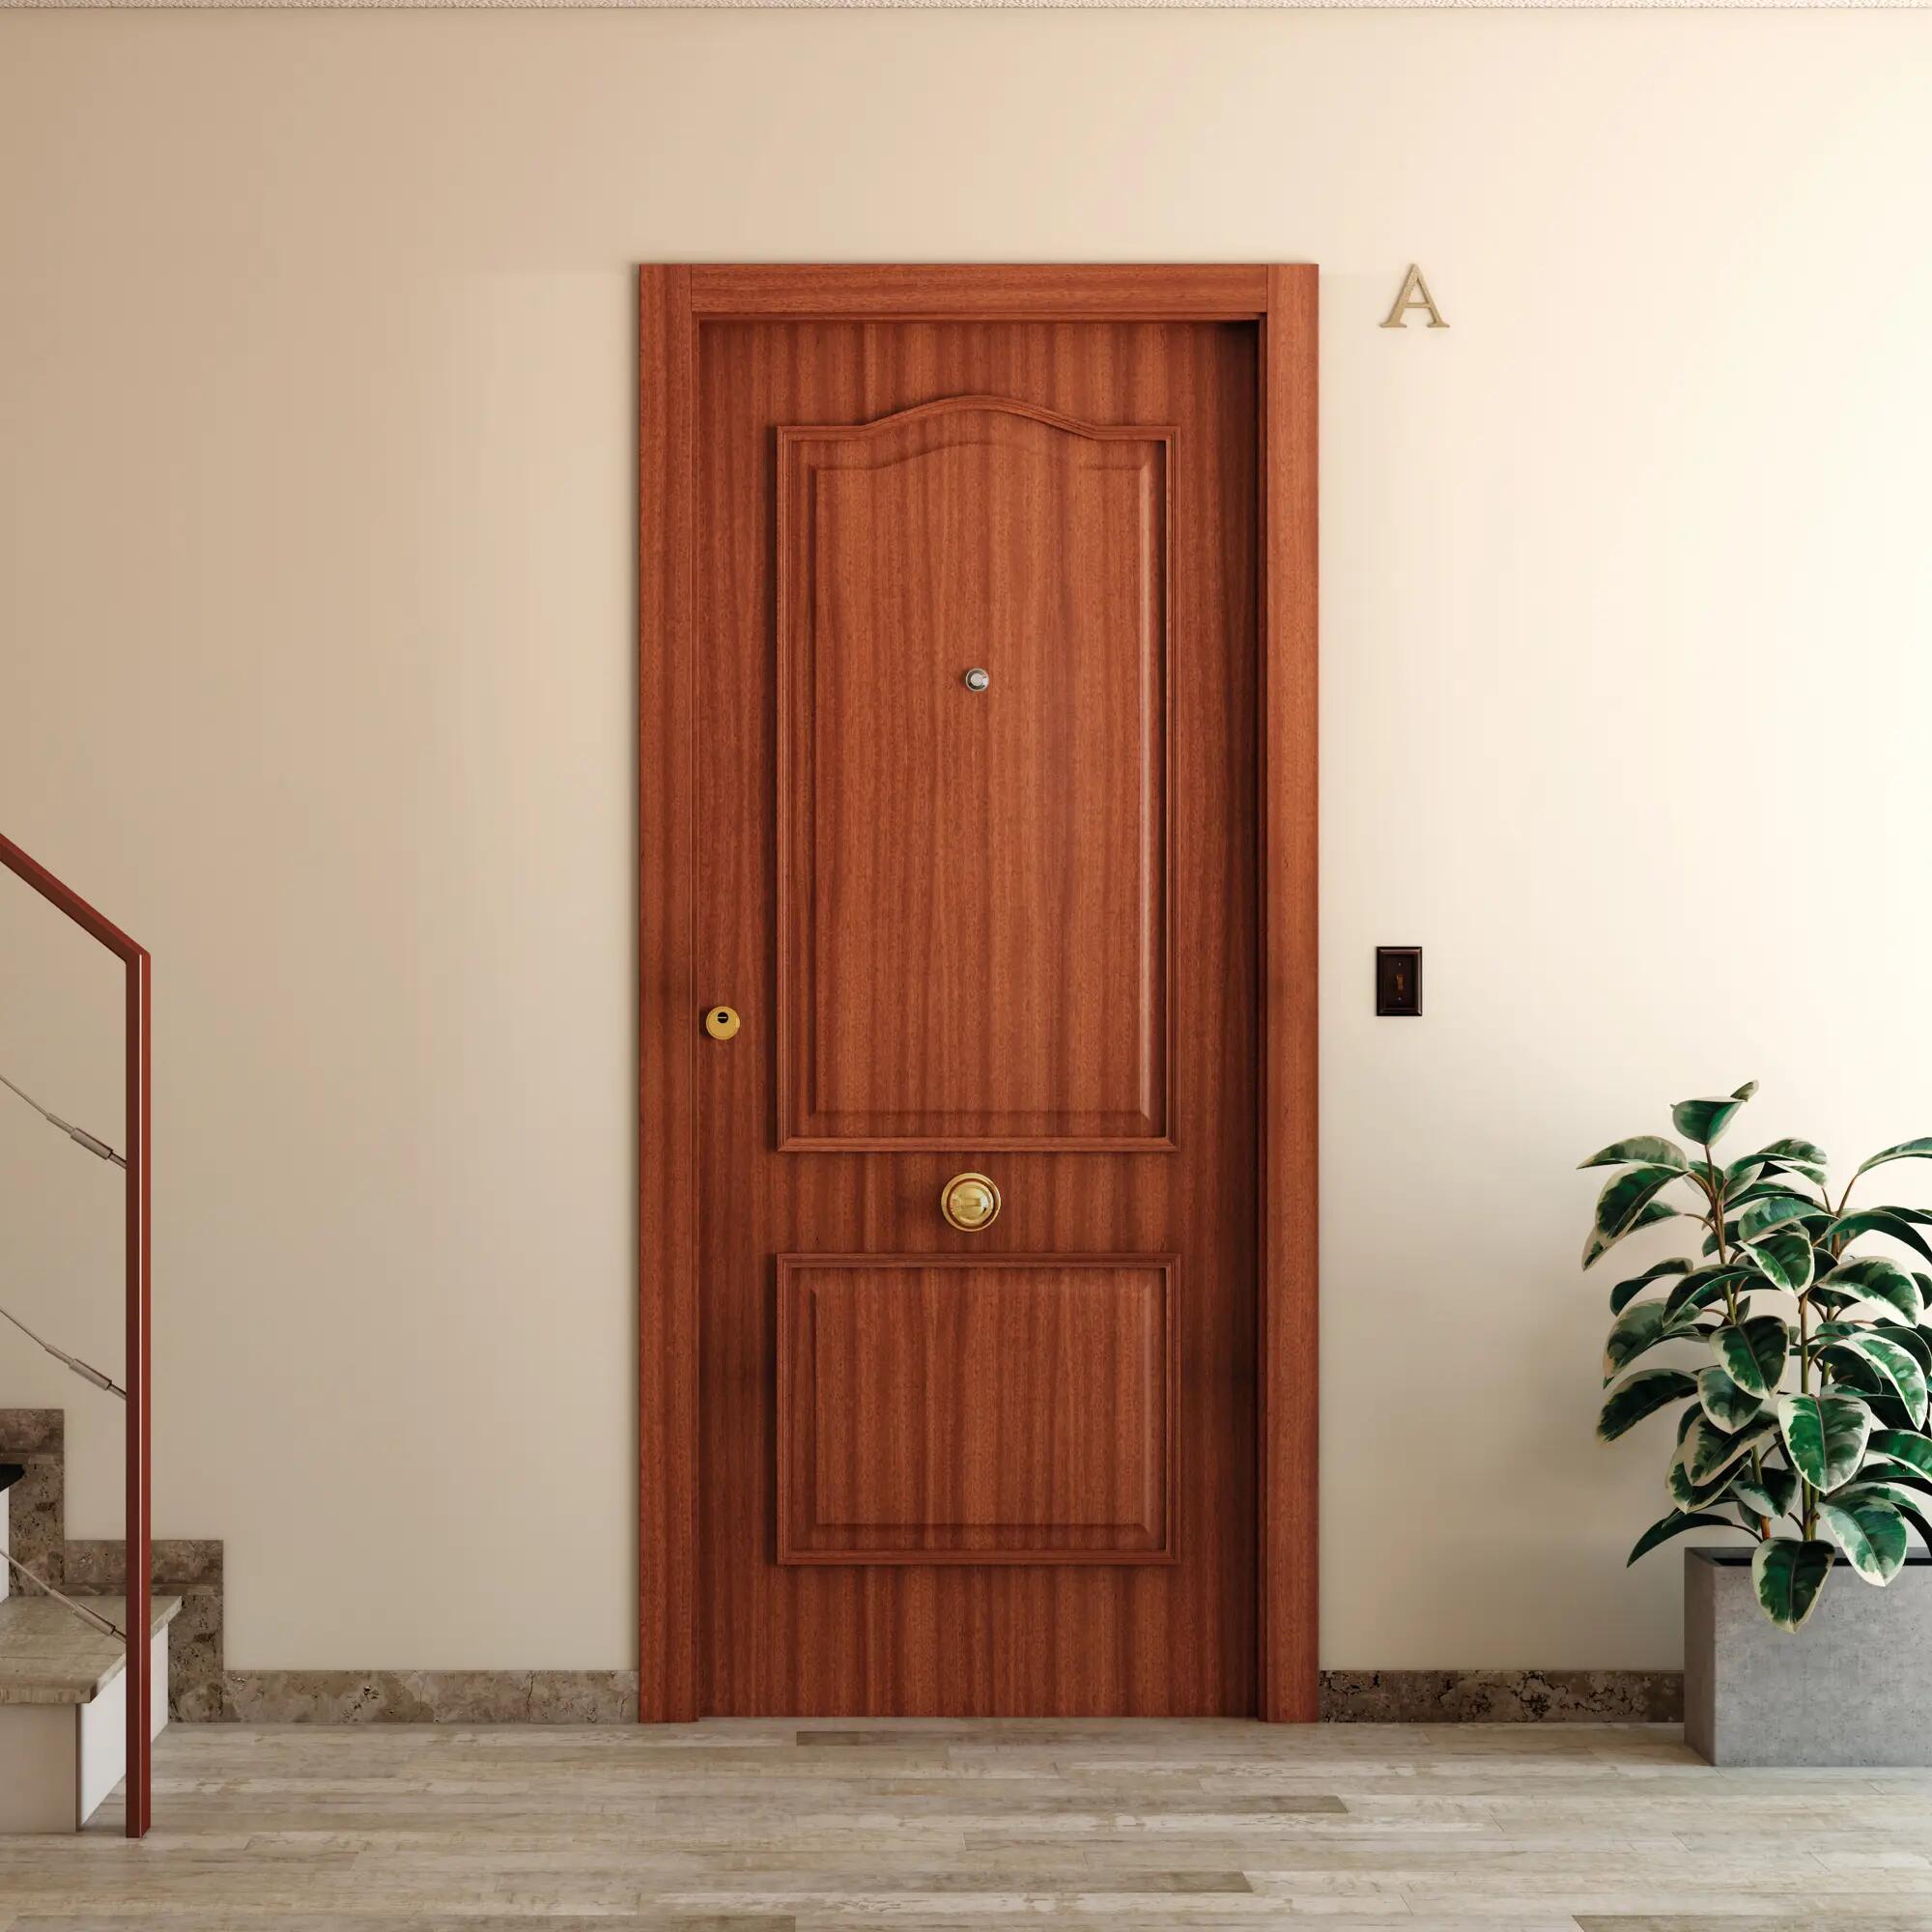 puertas madera exterior - Buscar con Google  Ideas de puerta de entrada,  Puertas de entrada, Puertas de madera